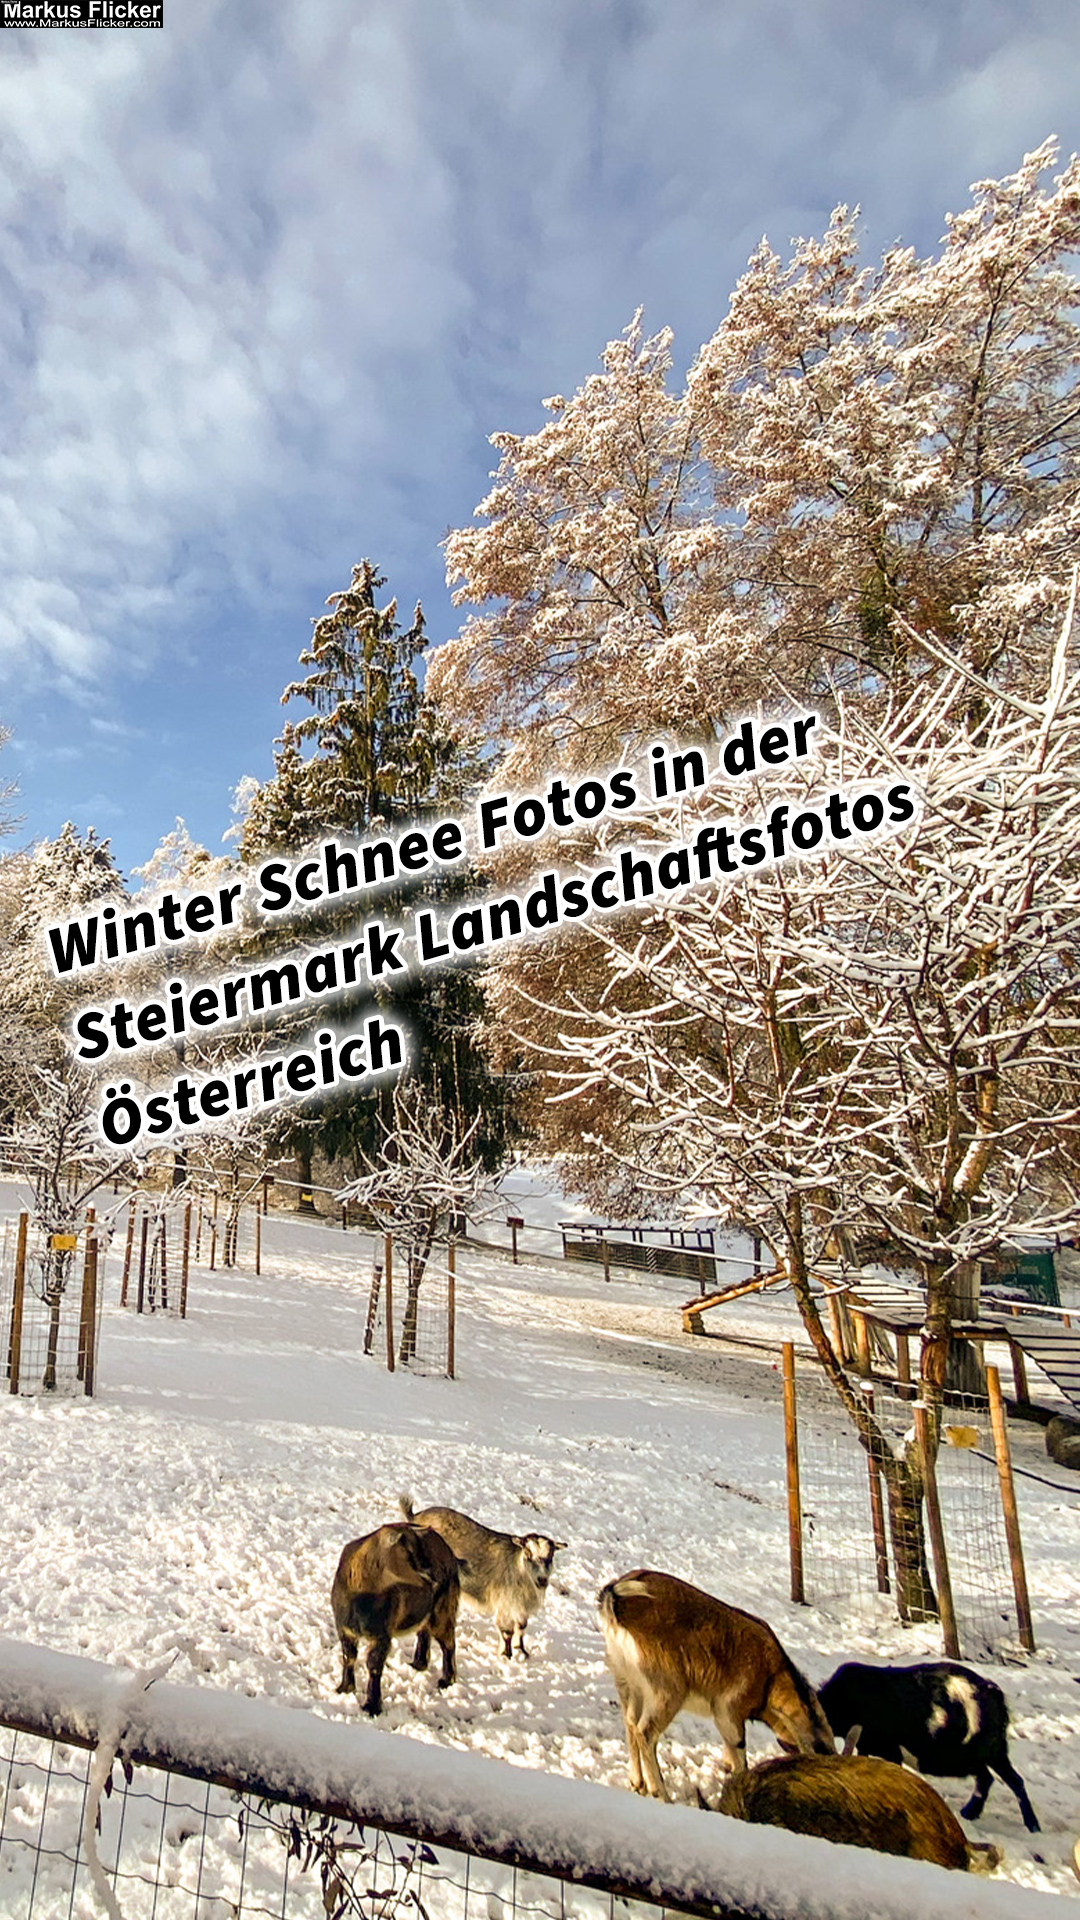 Winter Schnee Fotos Natur in der Steiermark Landschaftsfotos Österreich